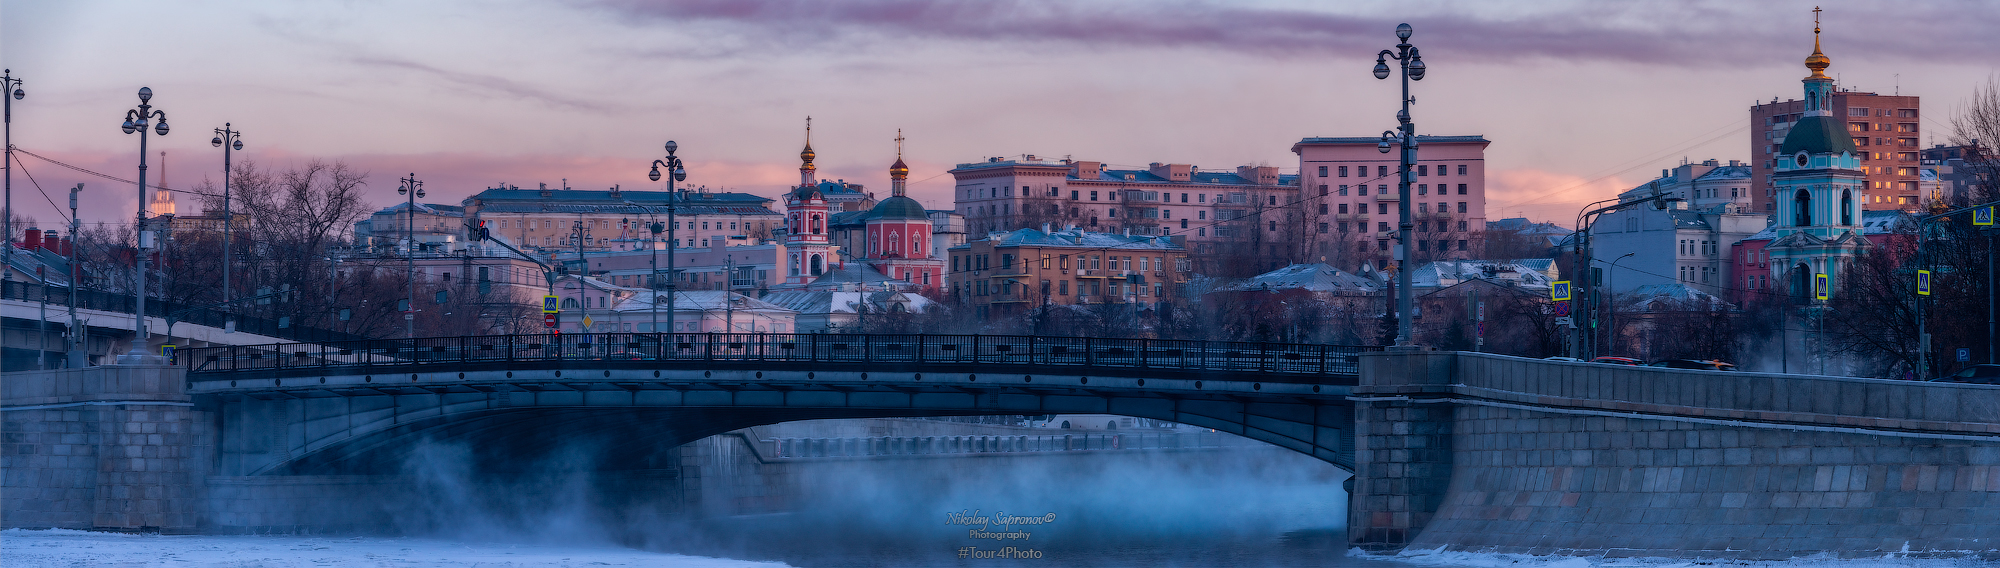 москва, устьинский мост, малый устьинский мост, яуза, морозы, морозное утро, яузские ворота, Николай Сапронов